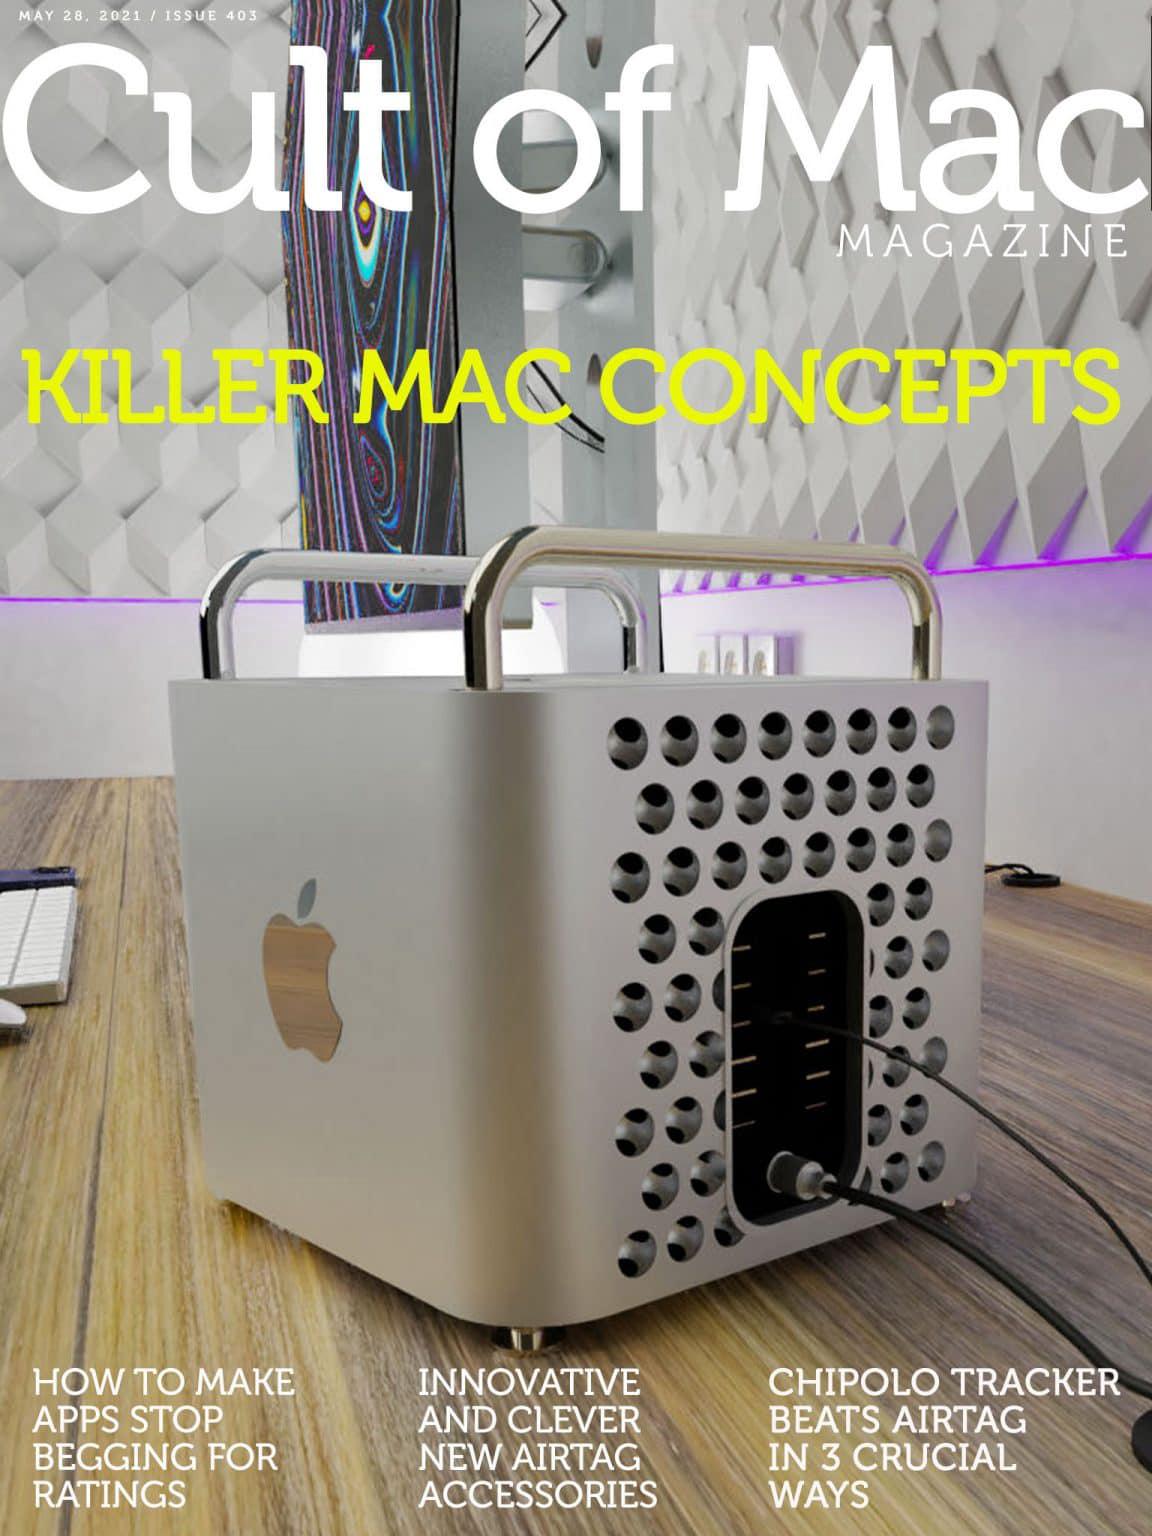 Conceptos de Killer Mac: ¿Listo para visualizar el futuro?